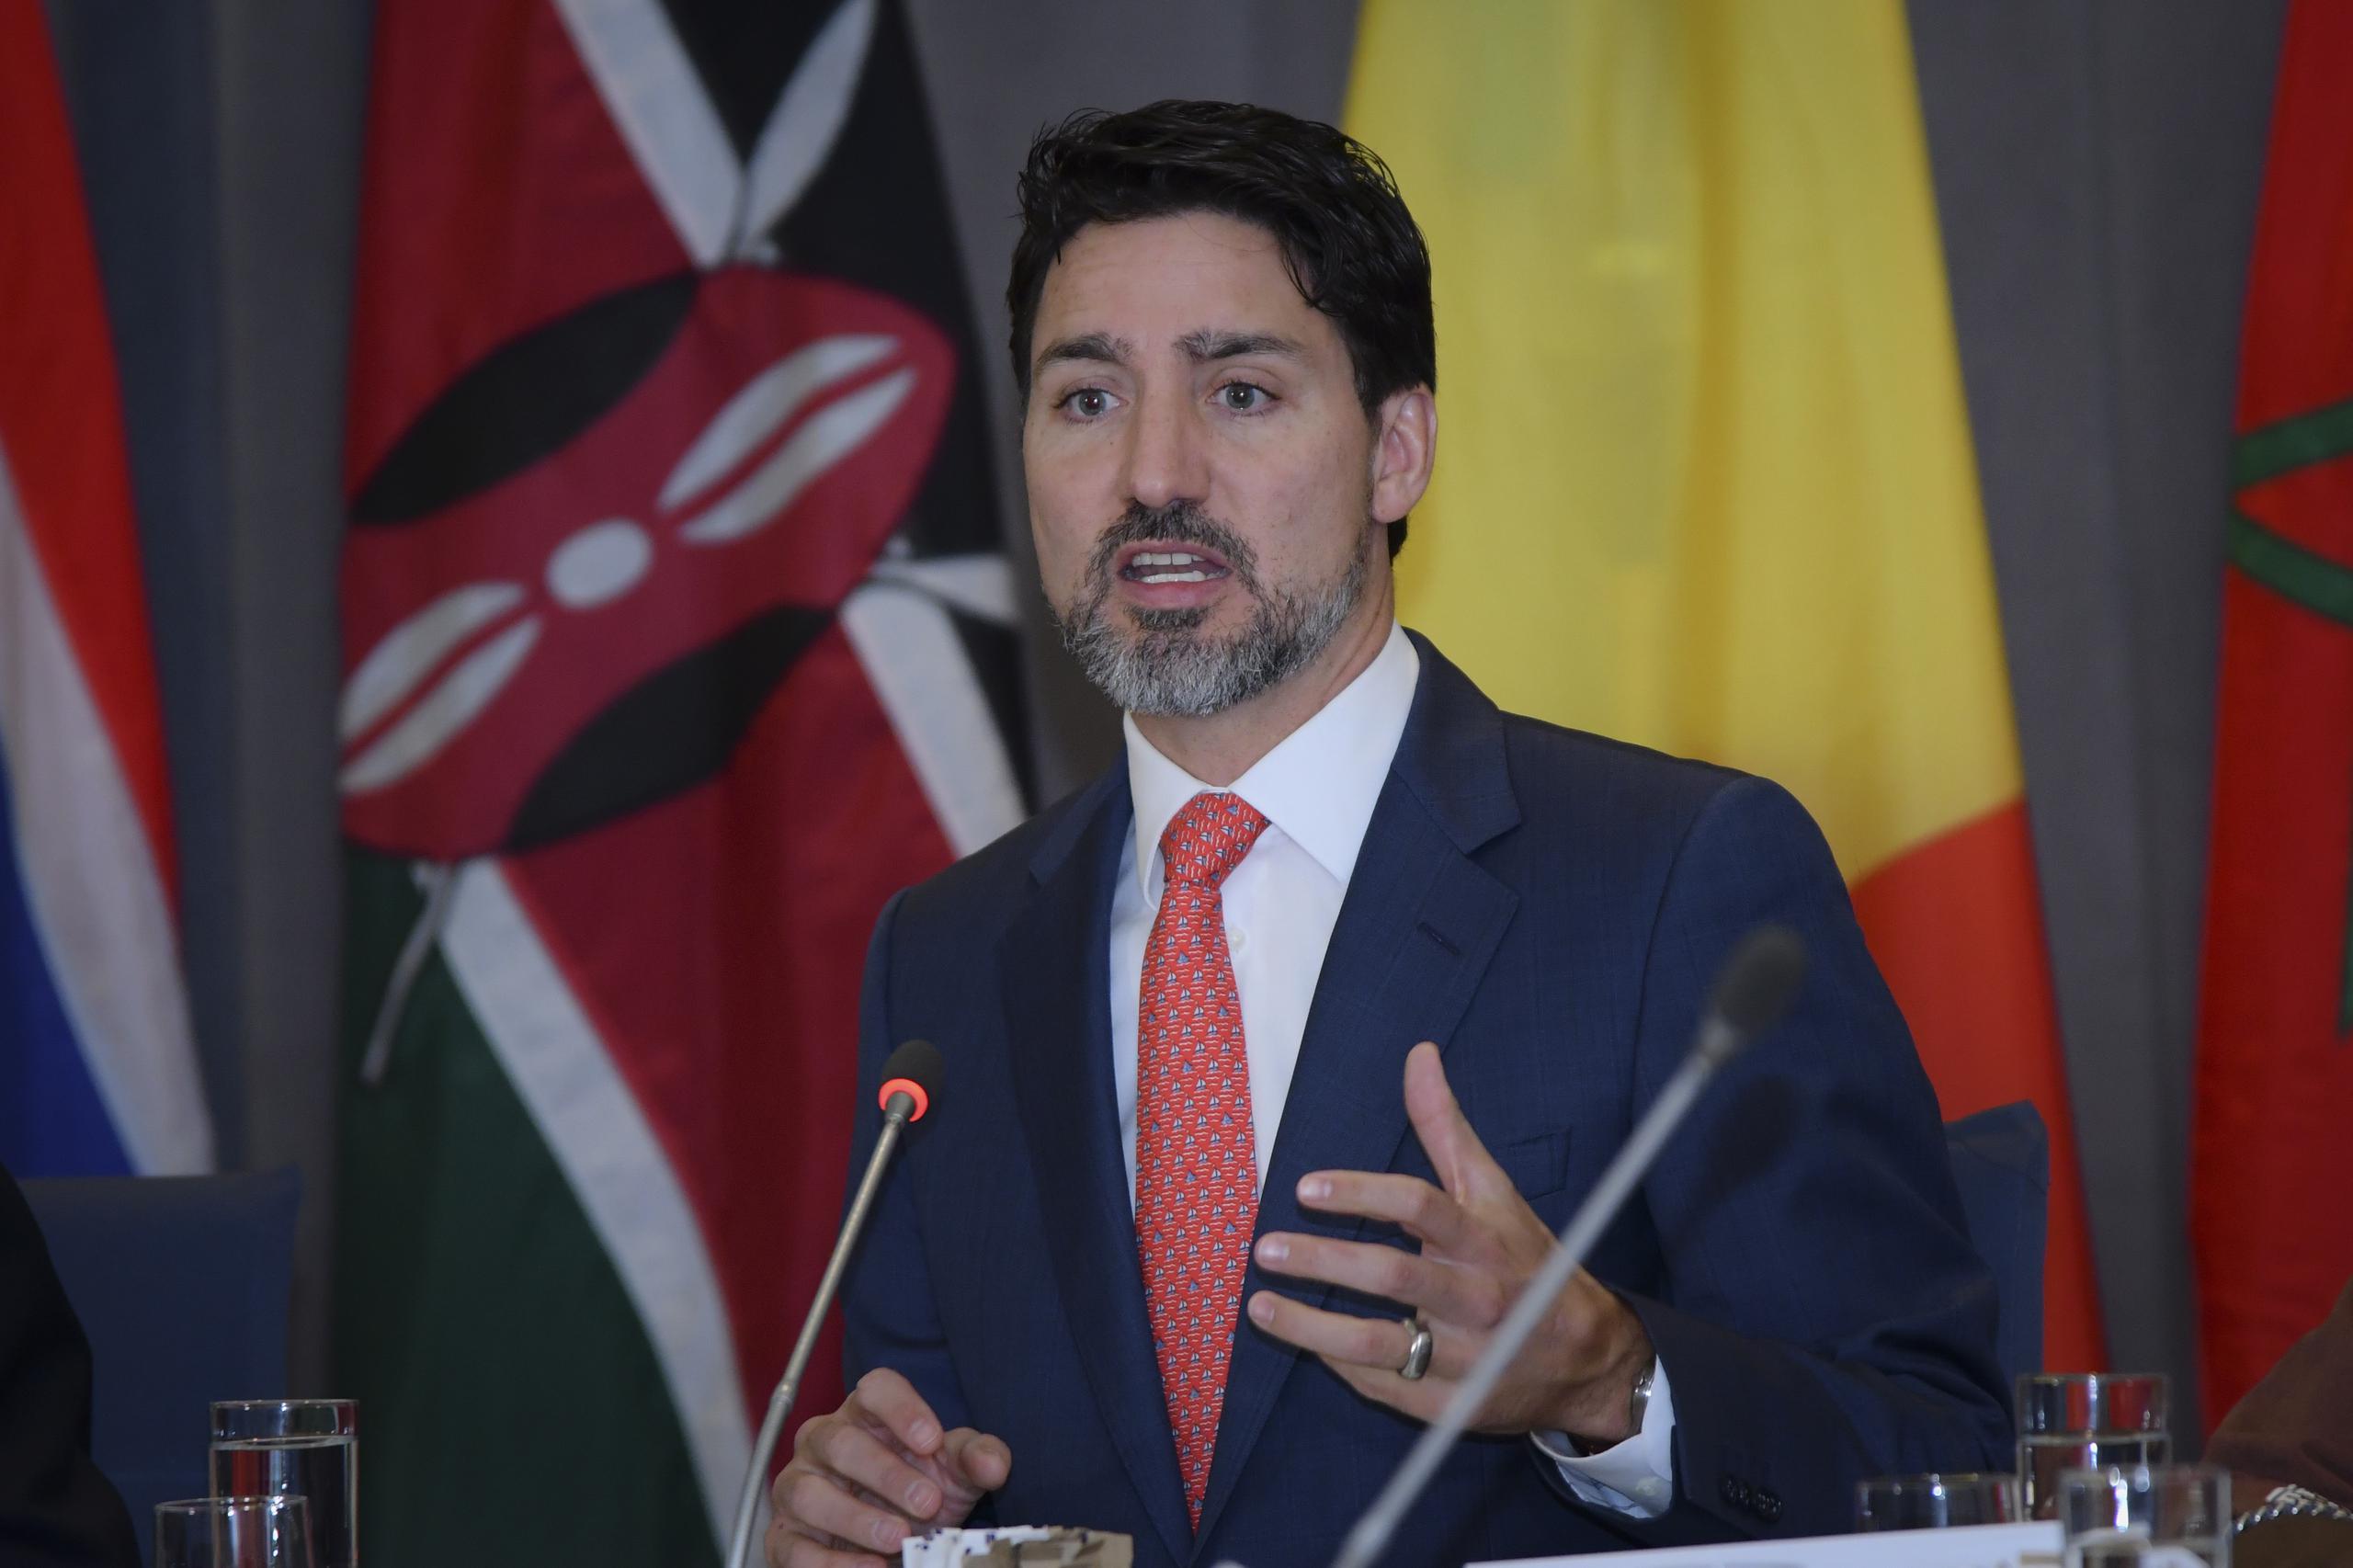 Durante una conferencia de prensa, Trudeau dijo que “la islamofobia es real” y que “Canadá no es inmune a la intolerancia” que se ha visto “en otras partes del mundo”.